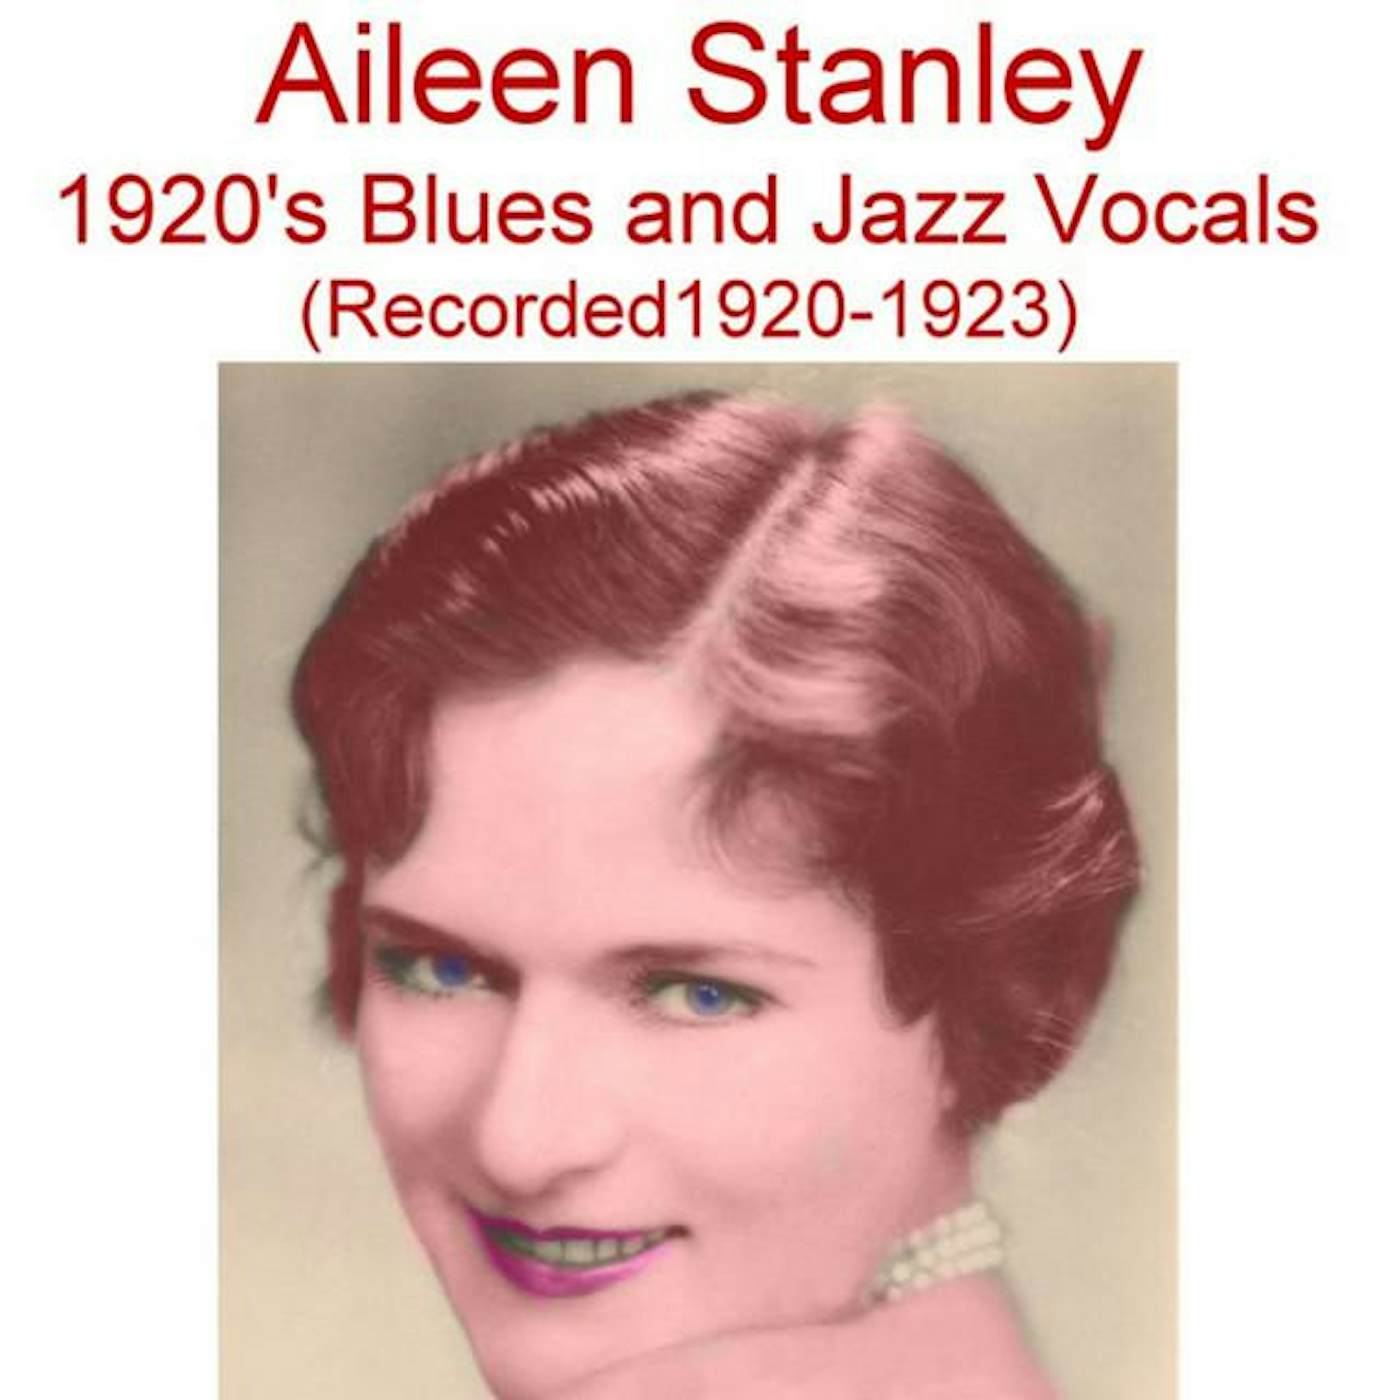 Aileen Stanley